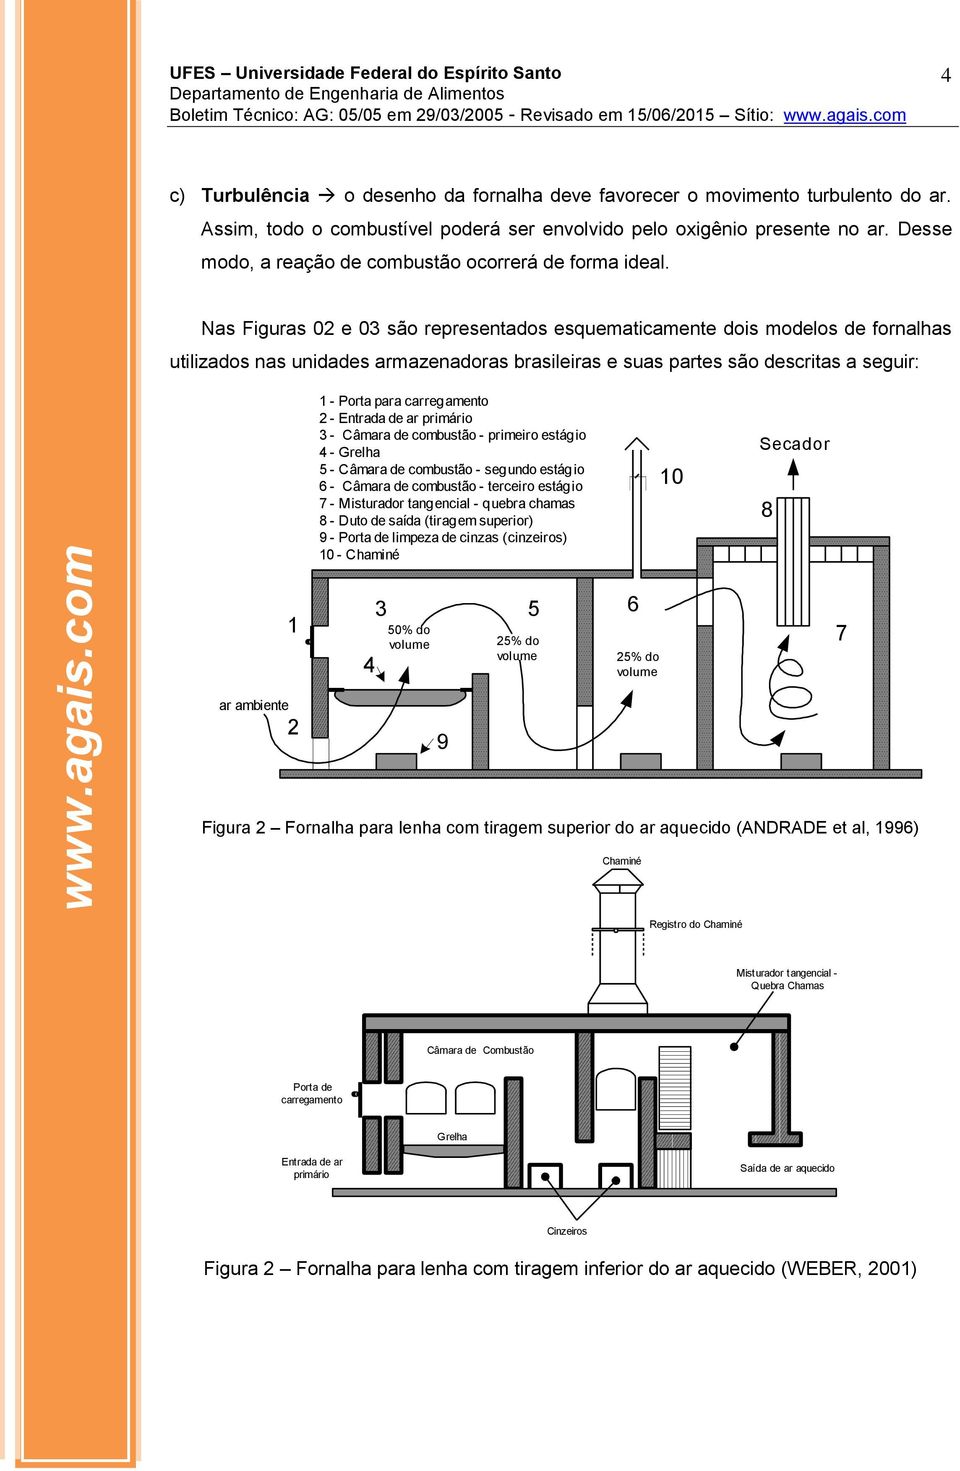 Nas Figuras 02 e 03 são representados esquematicamente dois modelos de fornalhas utilizados nas unidades armazenadoras brasileiras e suas partes são descritas a seguir: 1 - Porta para carregamento 2